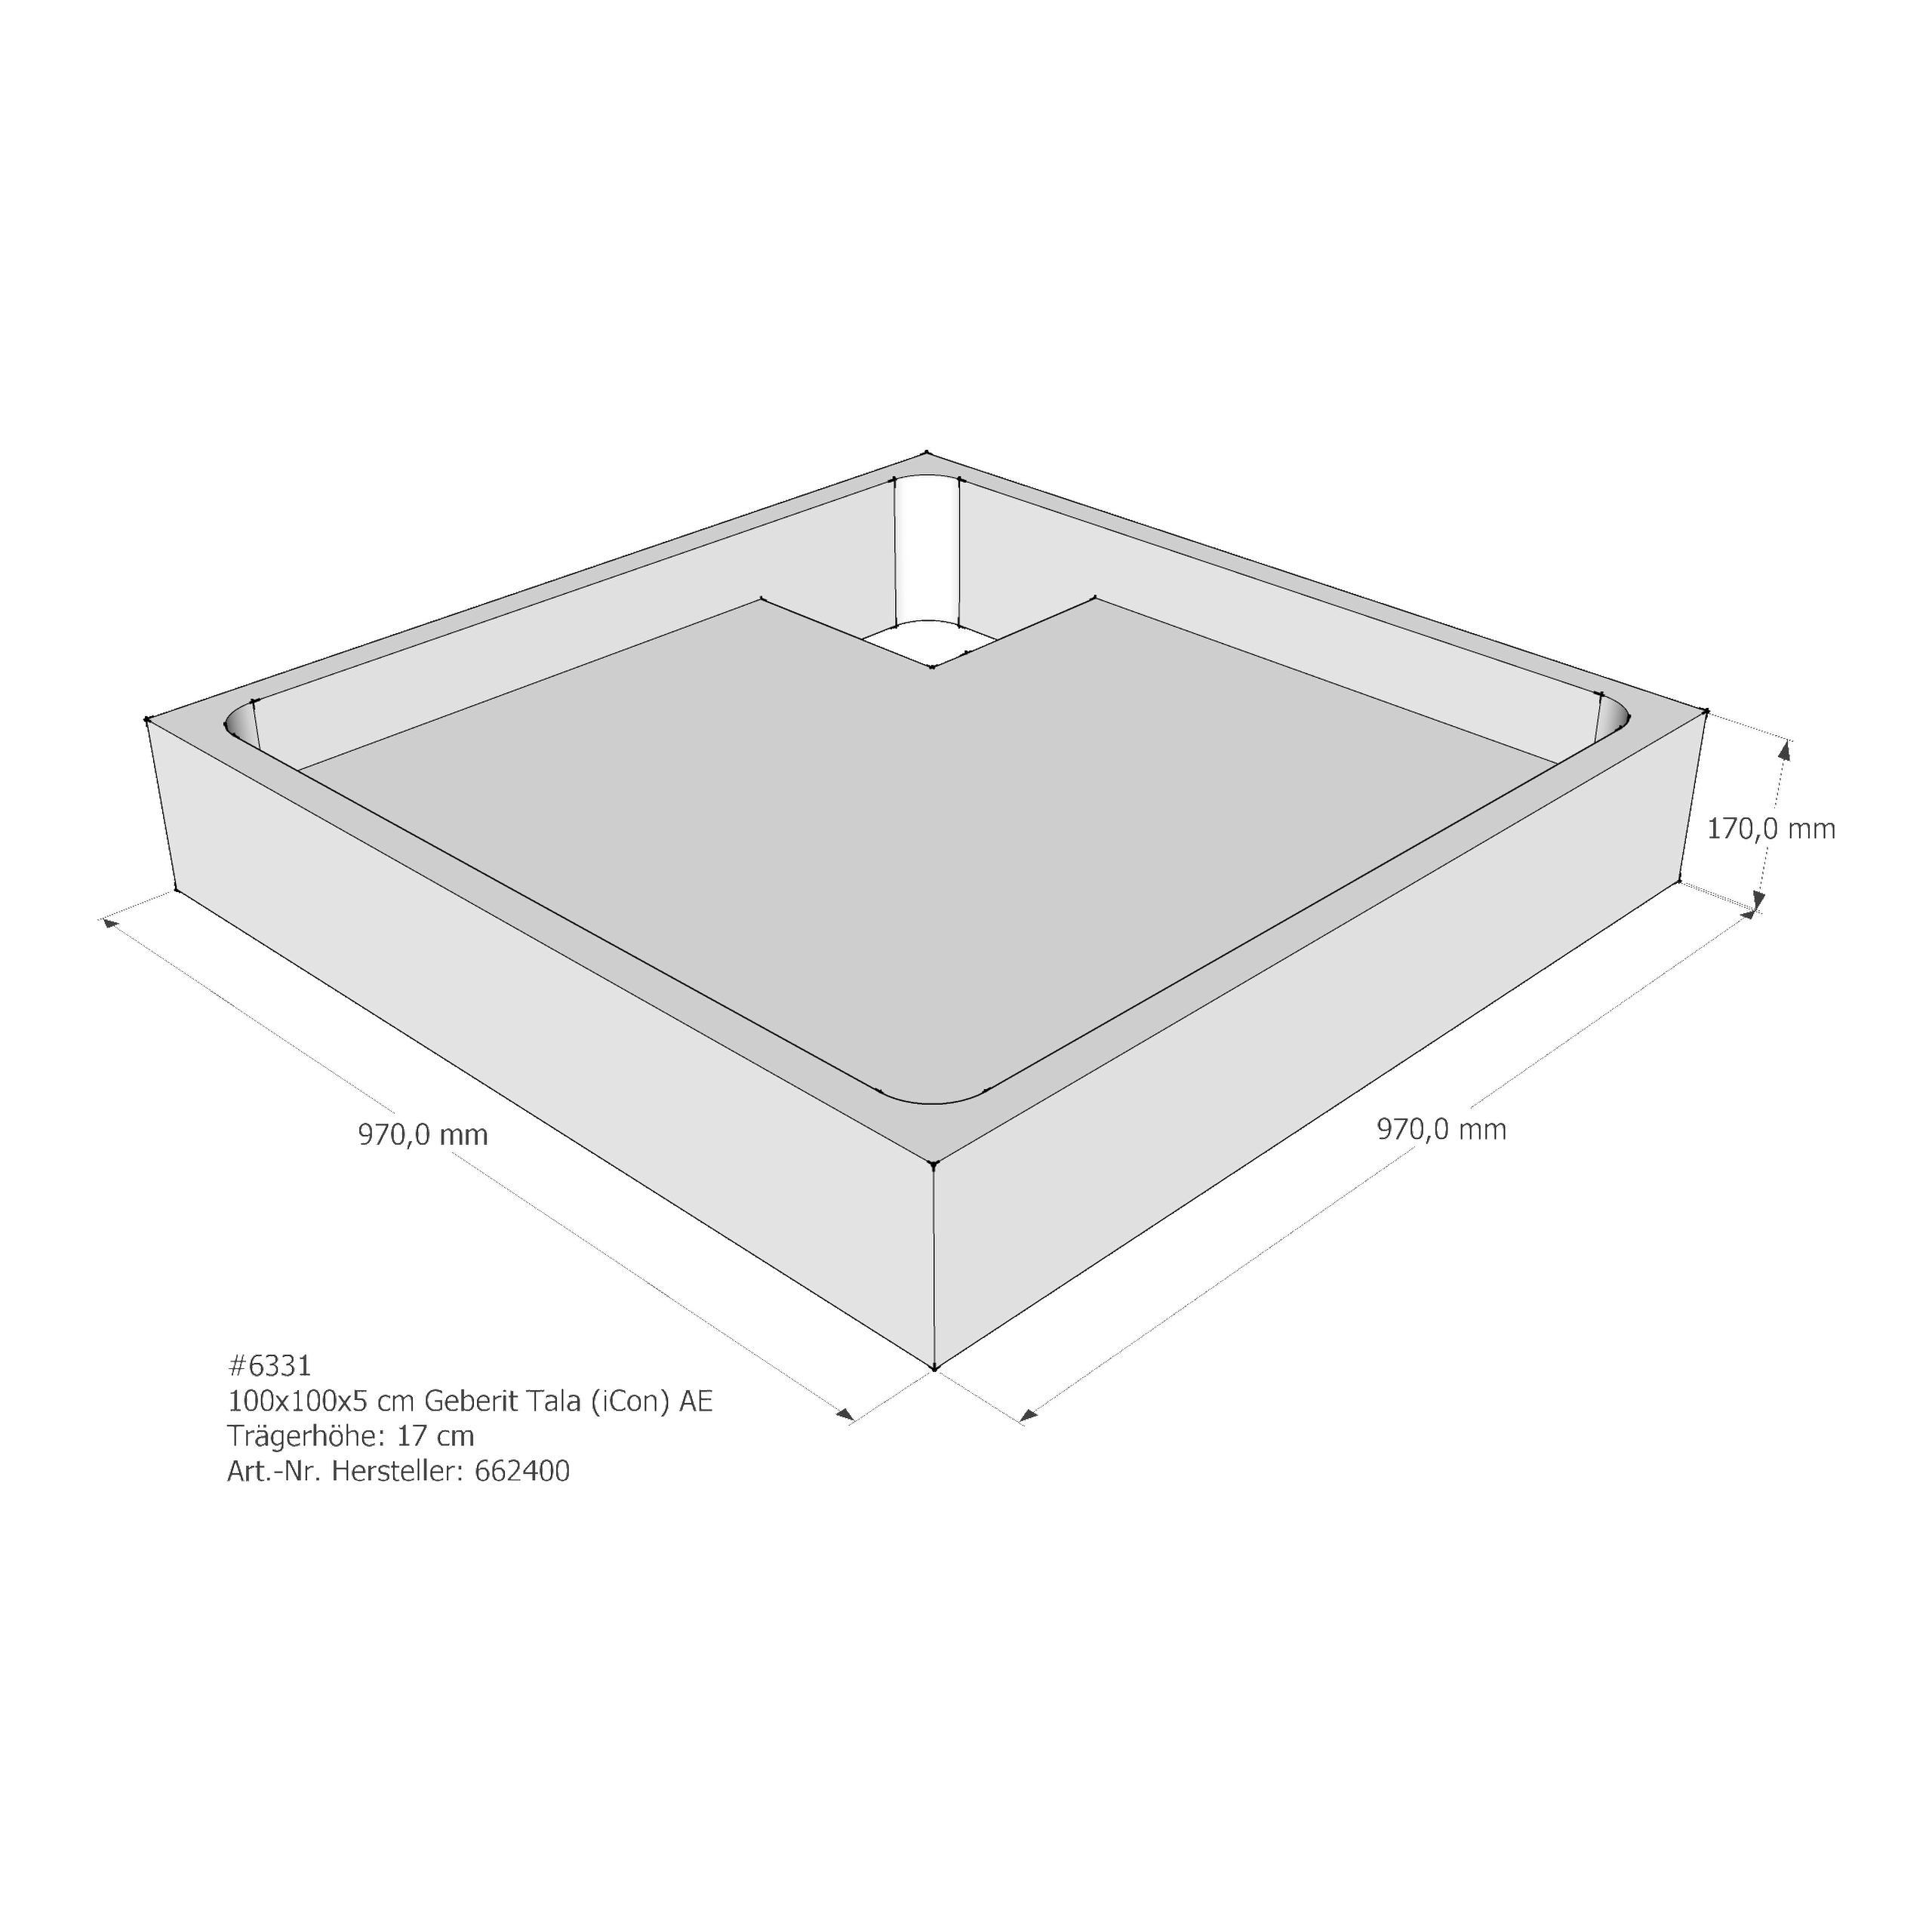 Duschwannenträger Keramag Tala (iCon T50) 100x100x5 cm AE